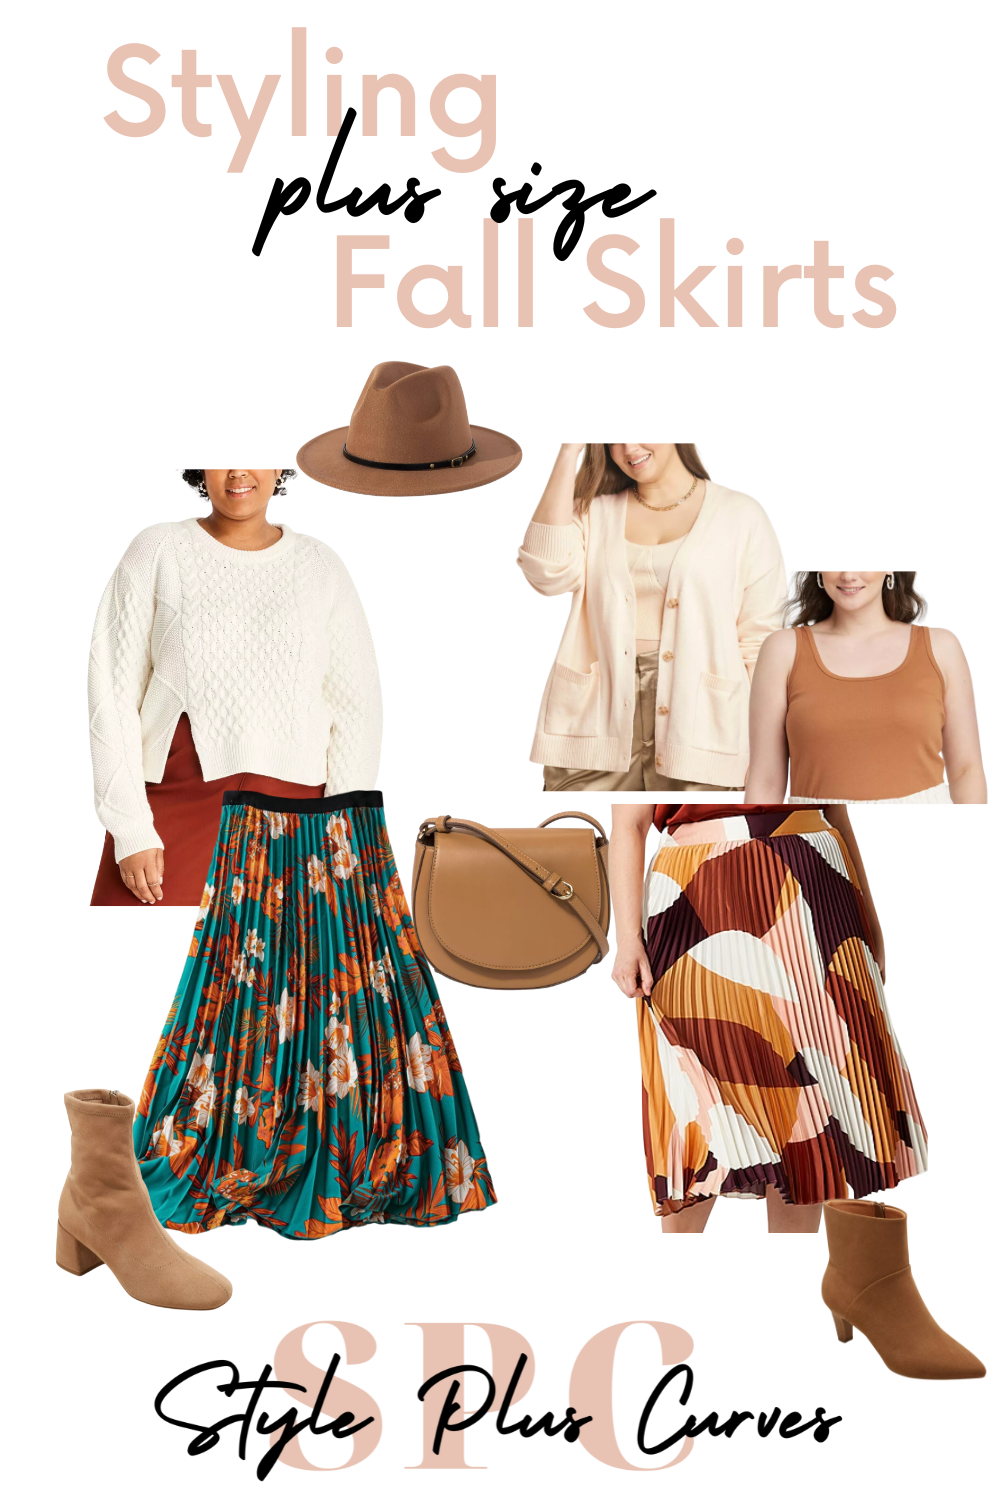 Styling Plus Size Fall Skirts